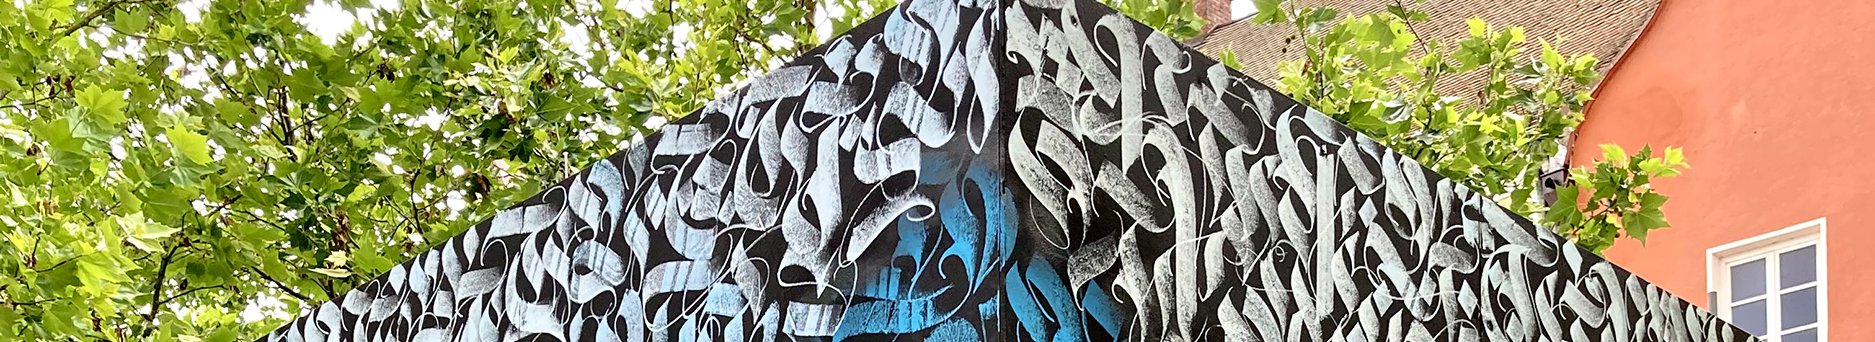 Graffiti-Kunstwerk spitze des bemalten Würfels mit Bäumen und Hausgiebel